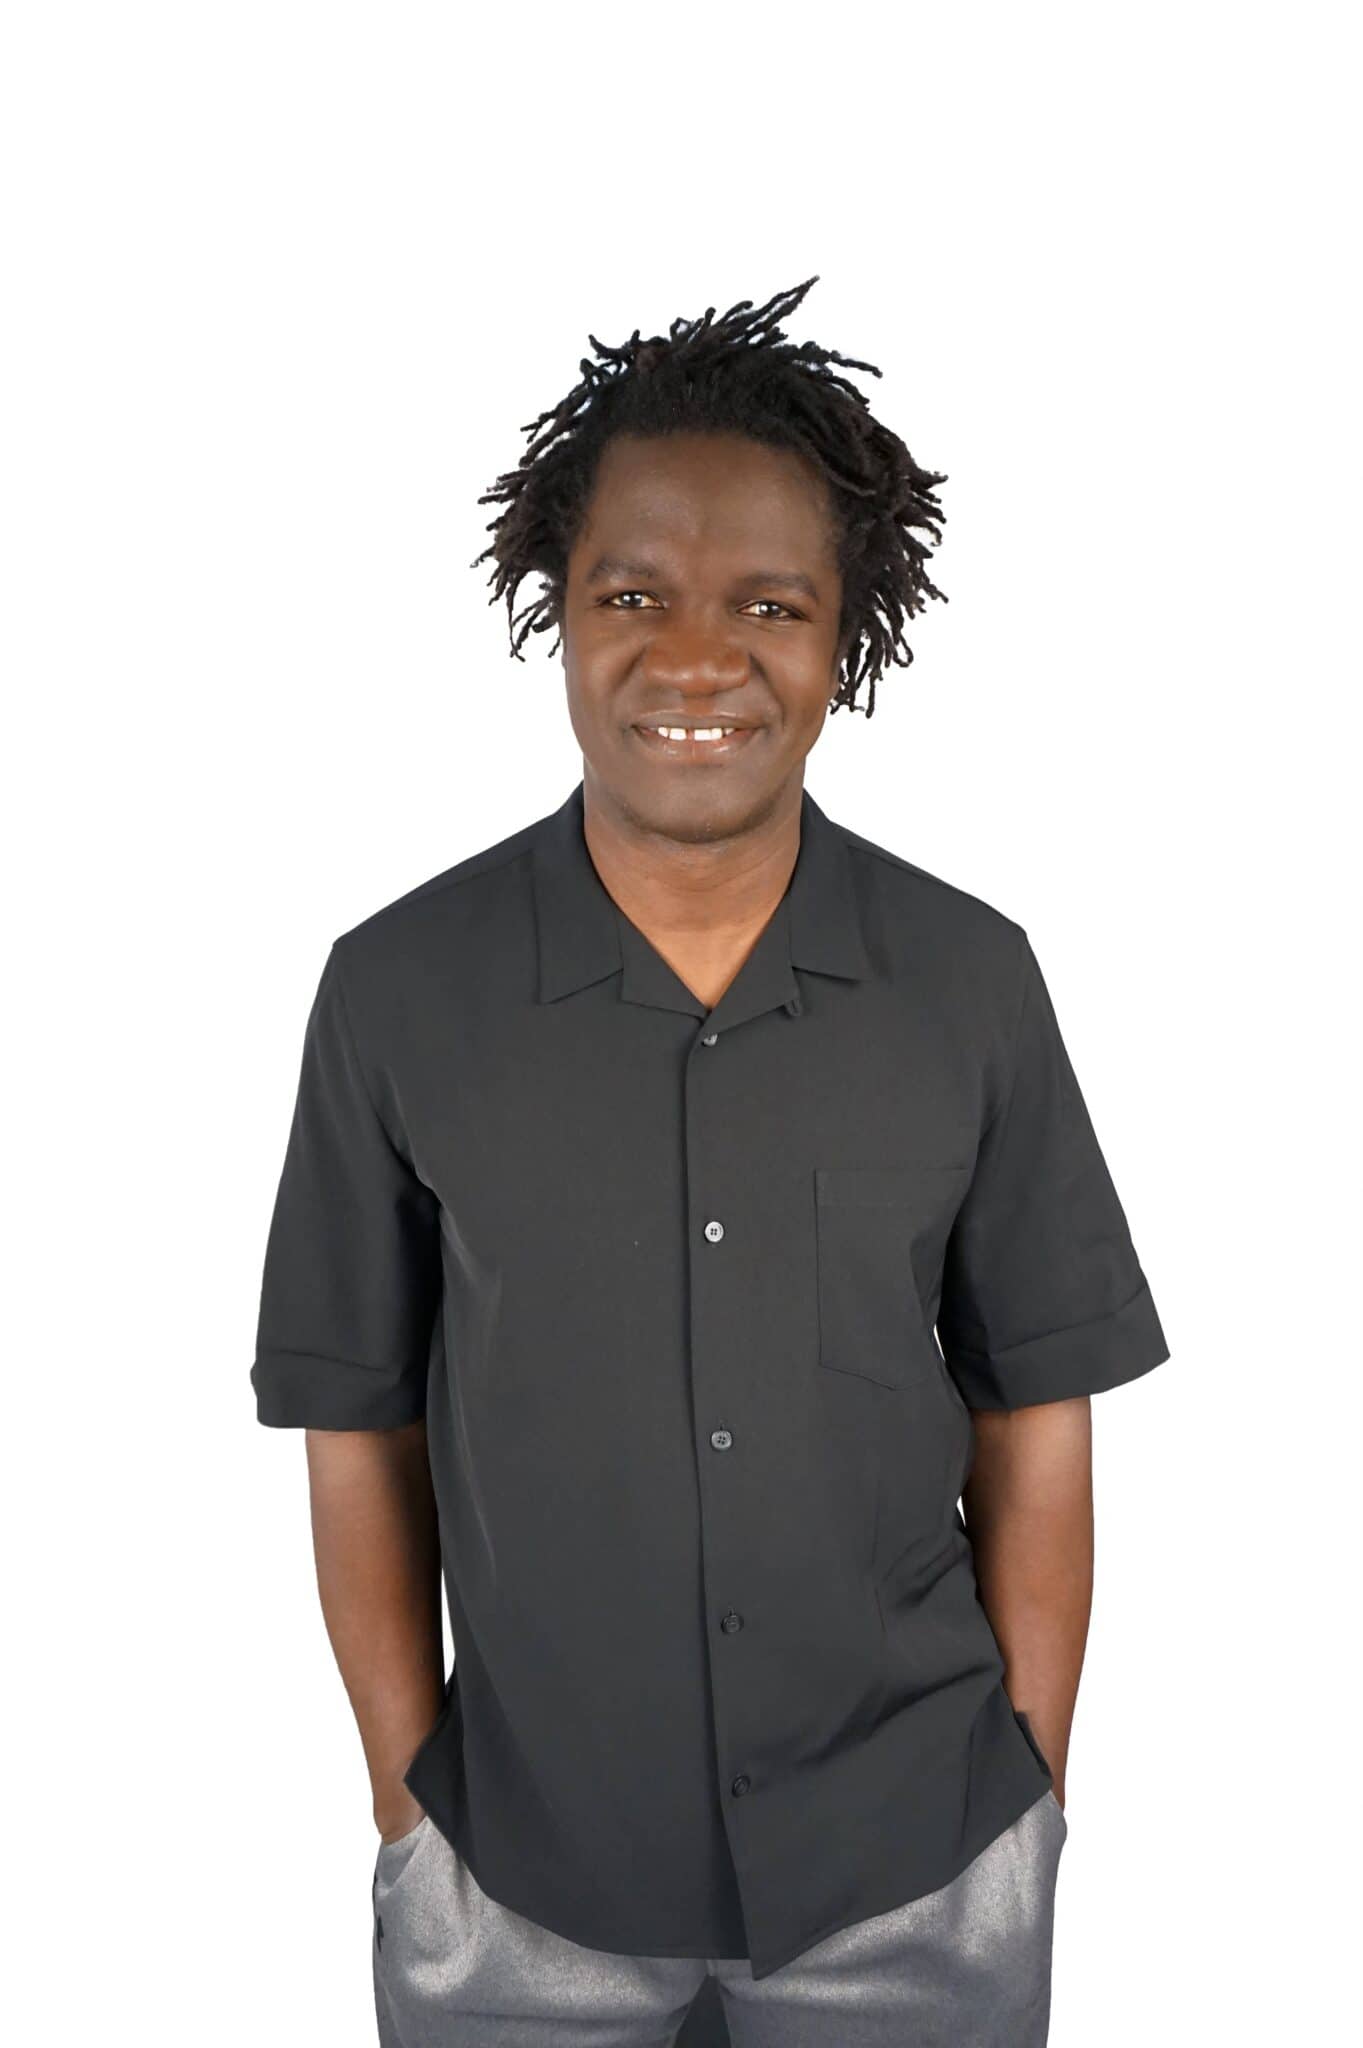 Boucar Diouf, souriant, portant une chemise noire